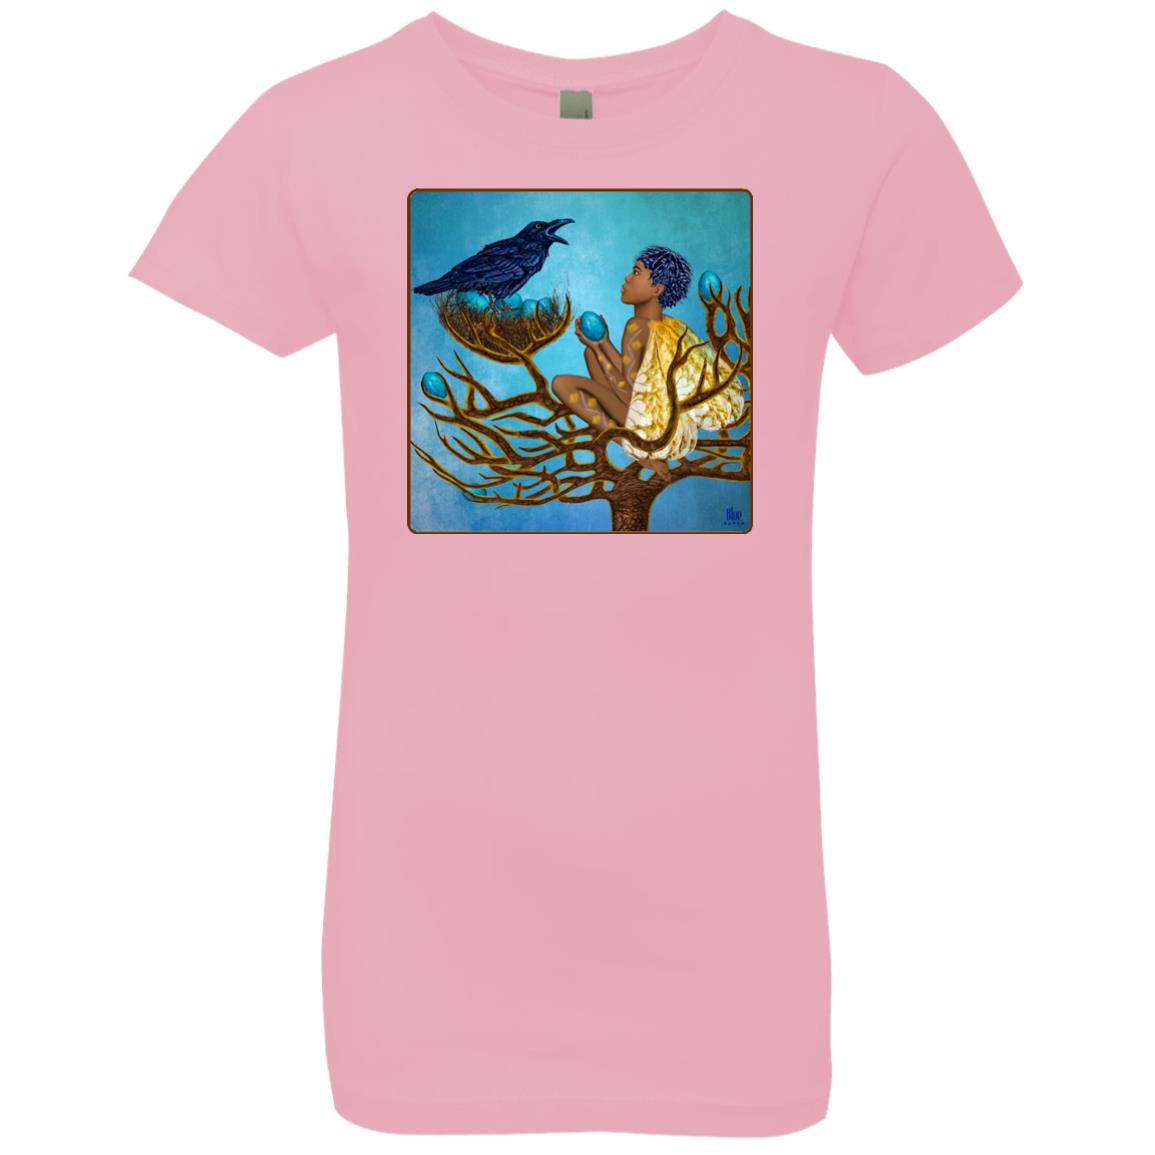 The blue raven's friend - Girl's Premium Cotton T-Shirt